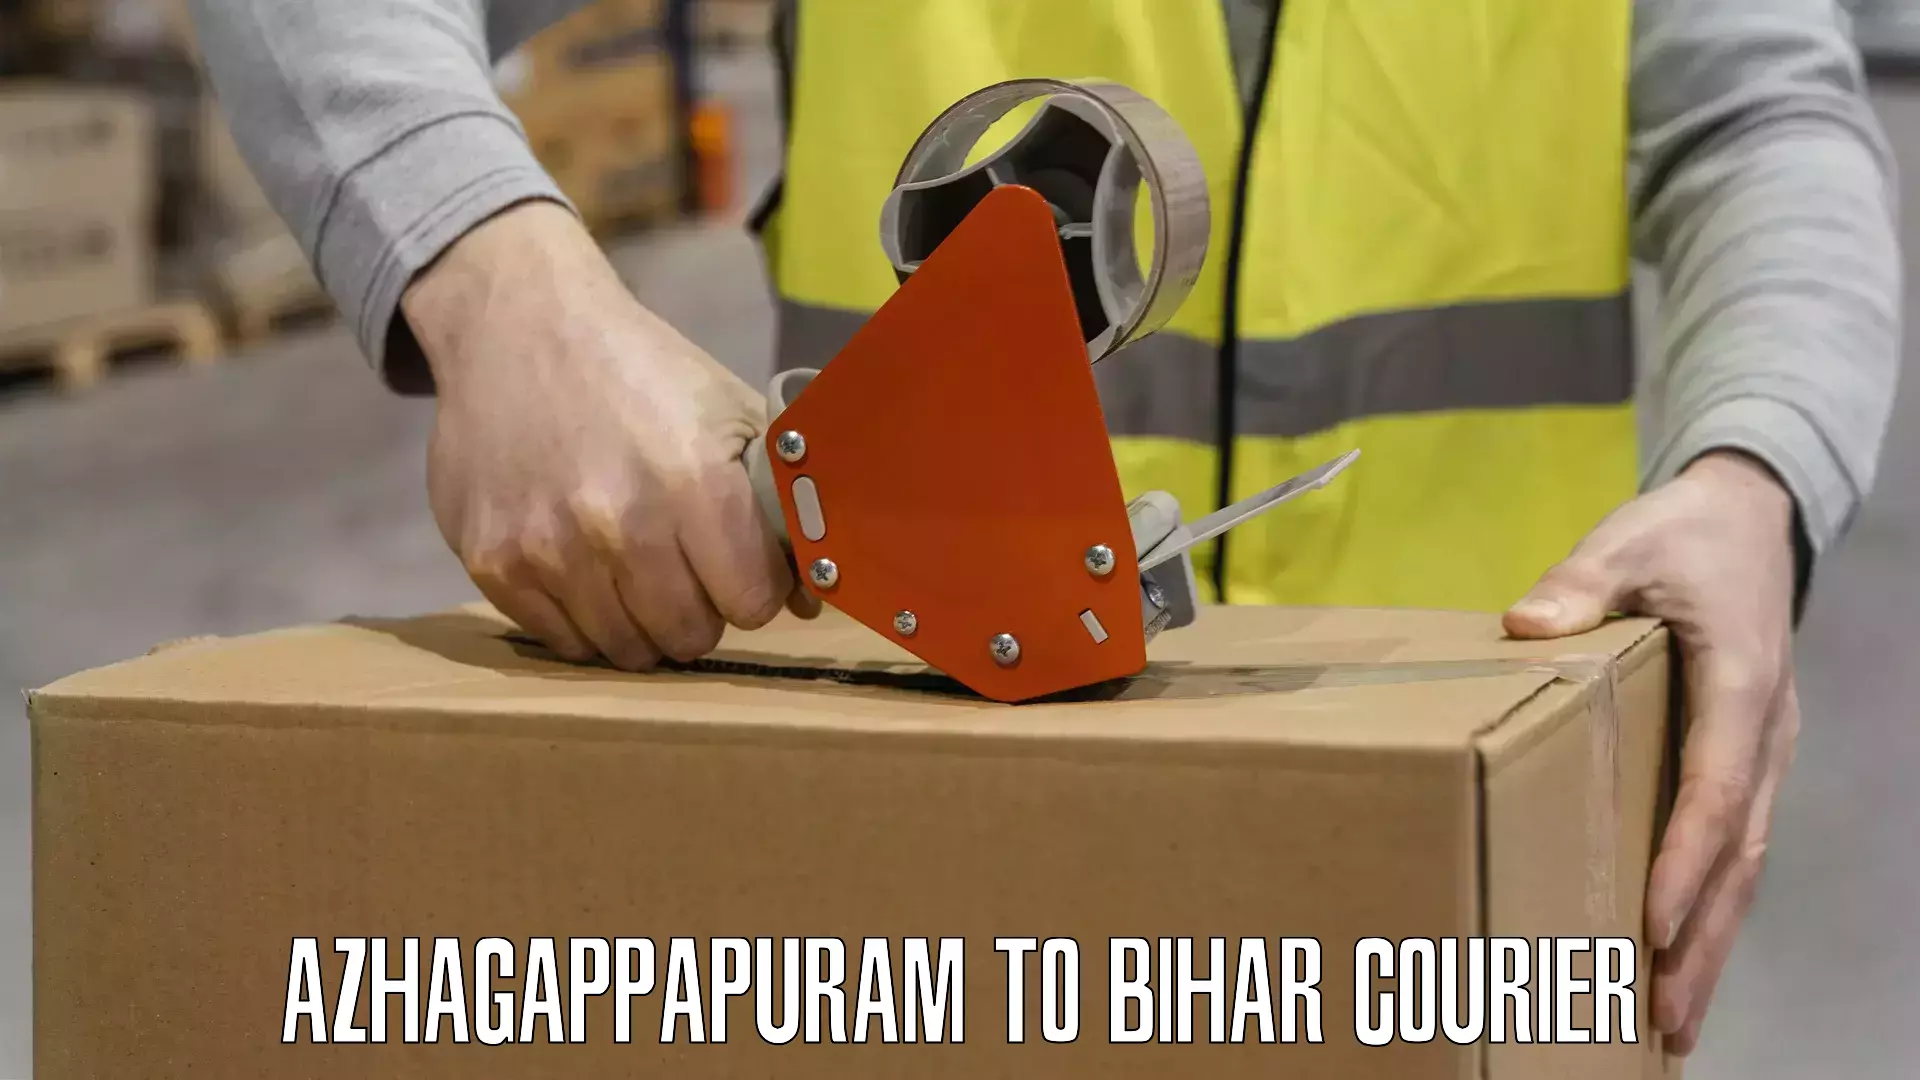 Efficient order fulfillment Azhagappapuram to Dinara